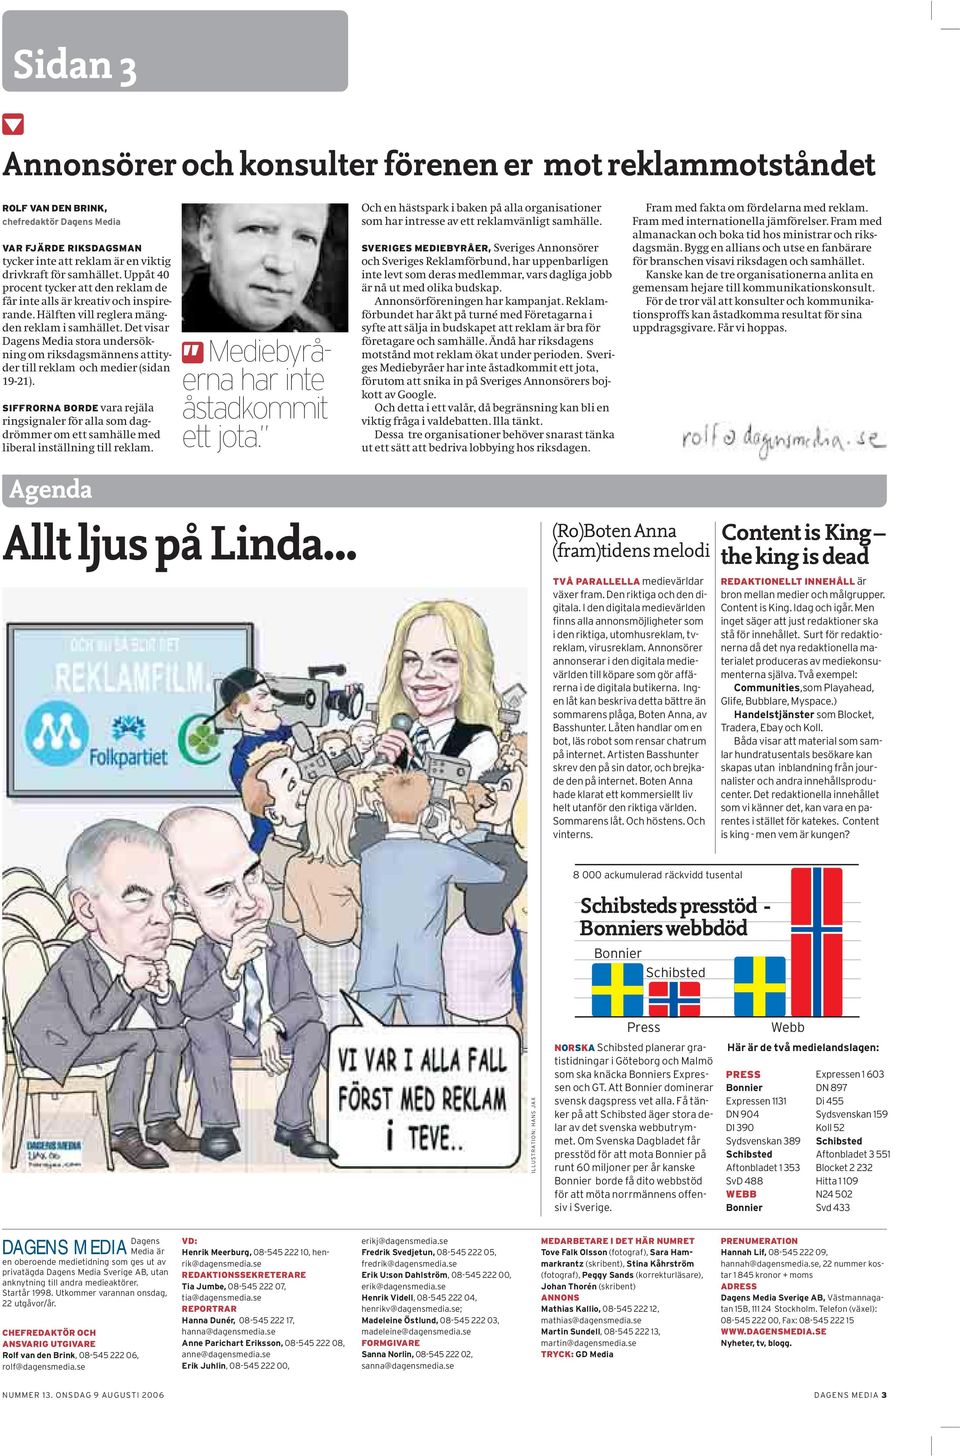 Det visar Dagens Media stora undersökning om riksdagsmännens attityder till reklam och medier (sidan 19-21).